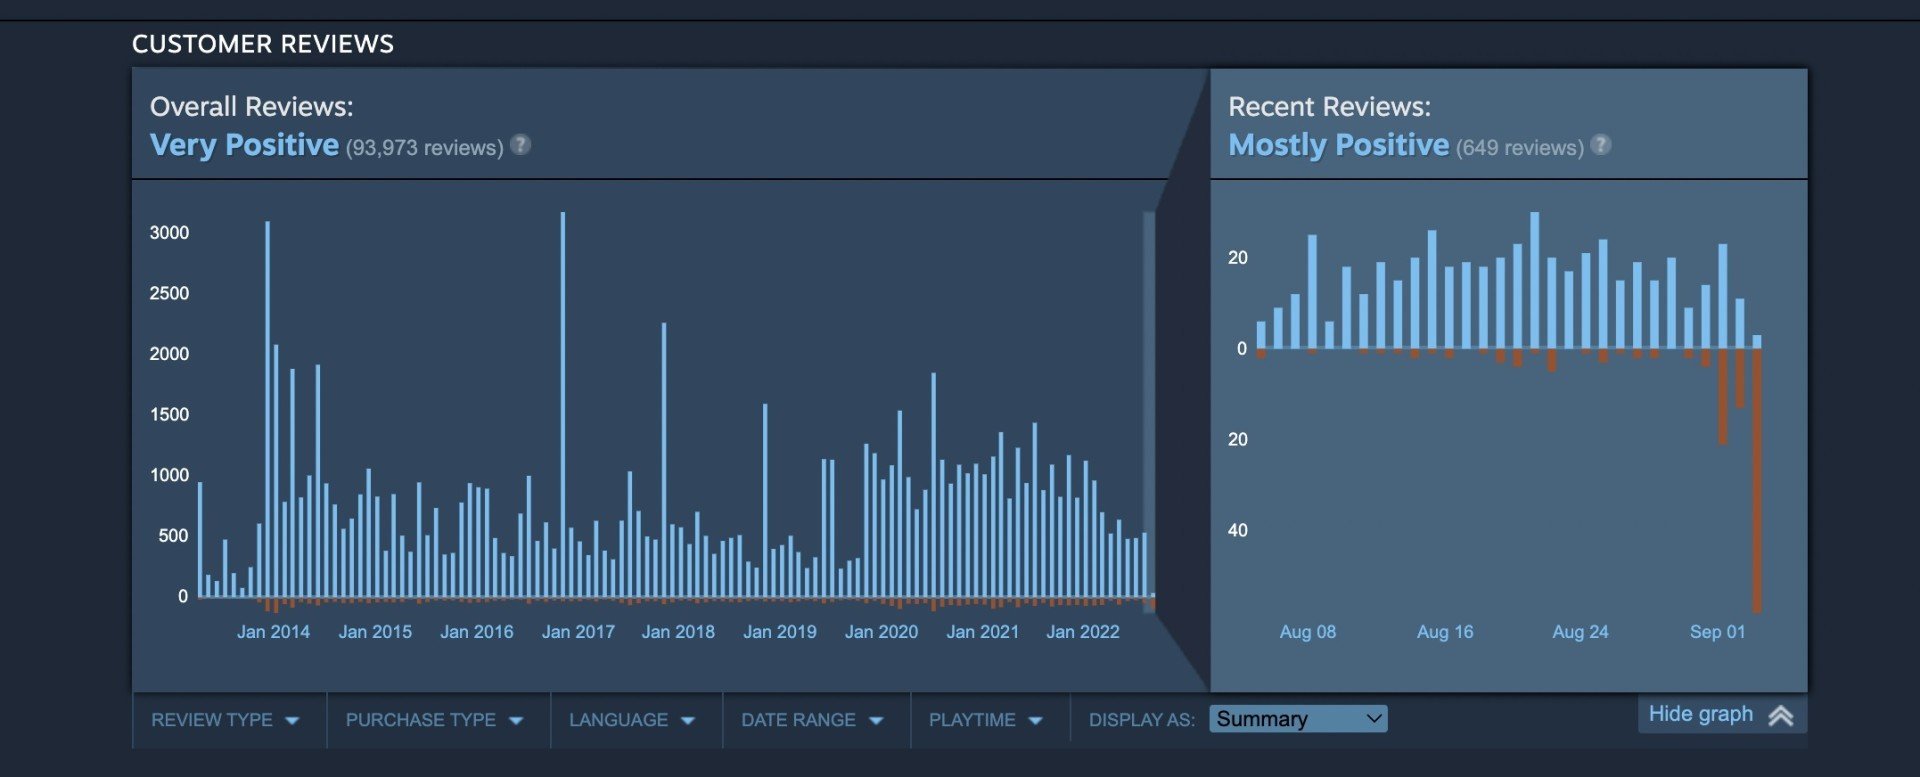 Намек на BioShock 4 Для Infinite вышел первый патч за 7 лет и сломал игру